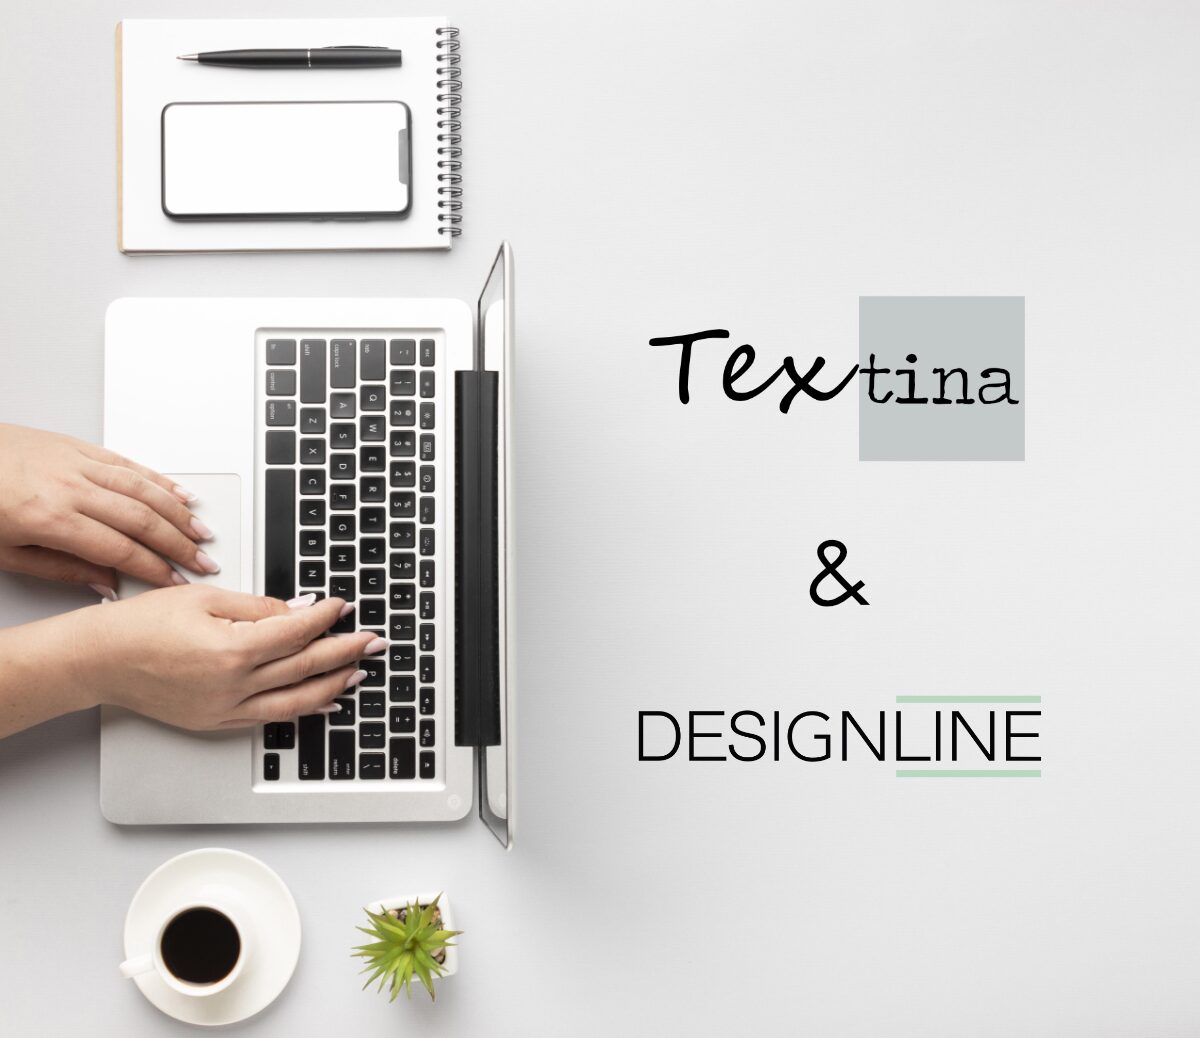 Designline & Textina